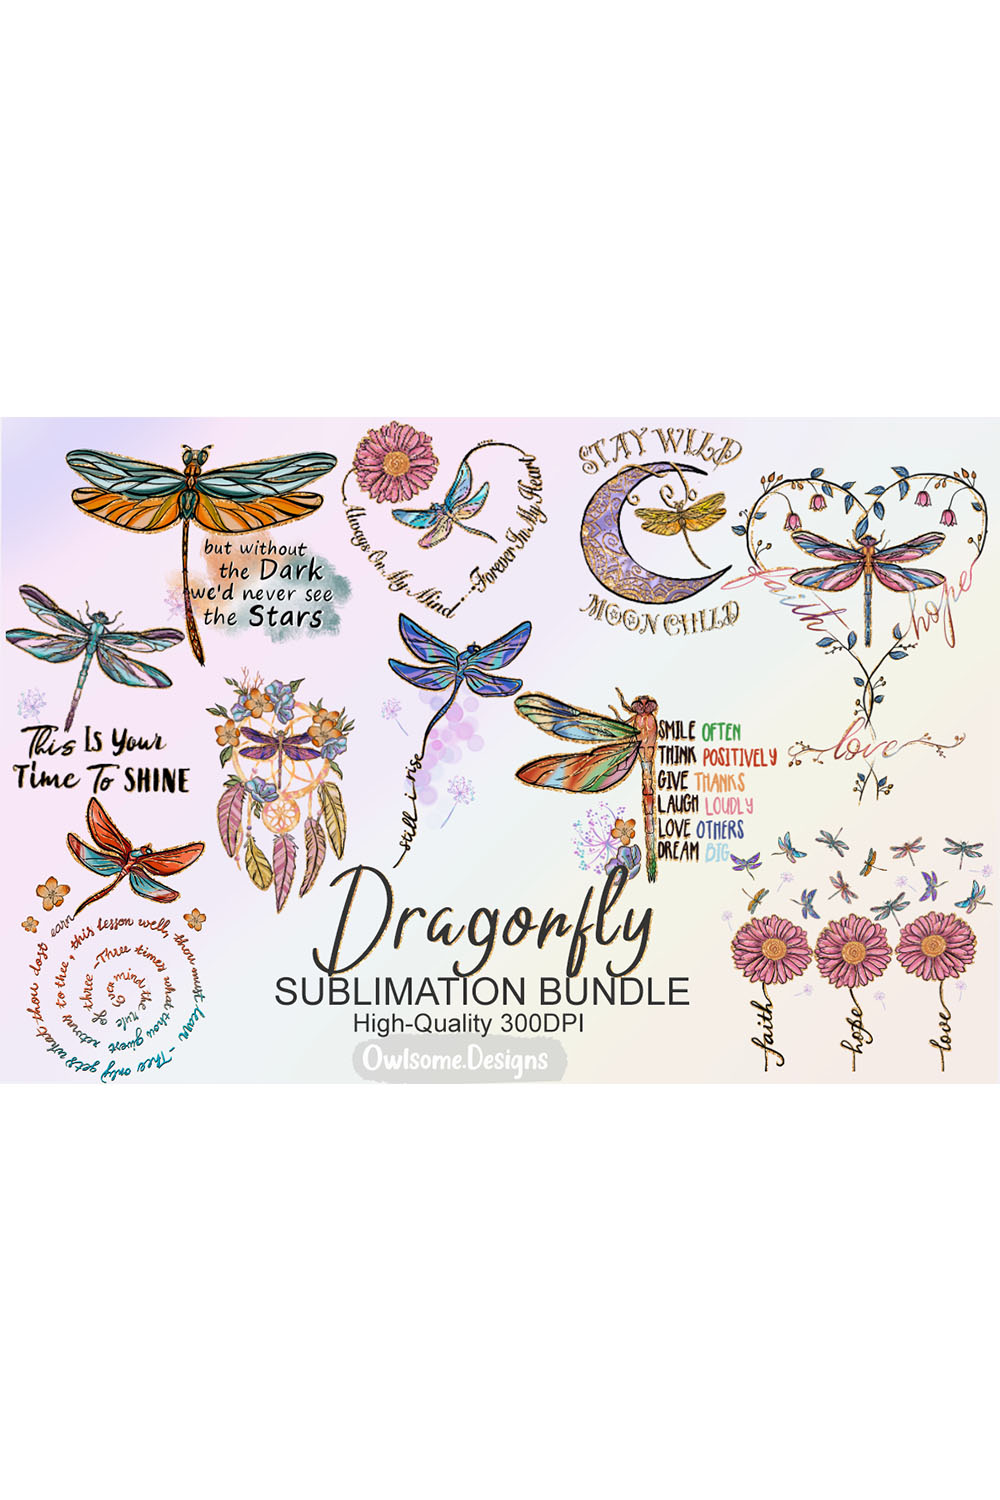 Dragonfly Sublimation Bundle PNG pinterest image.